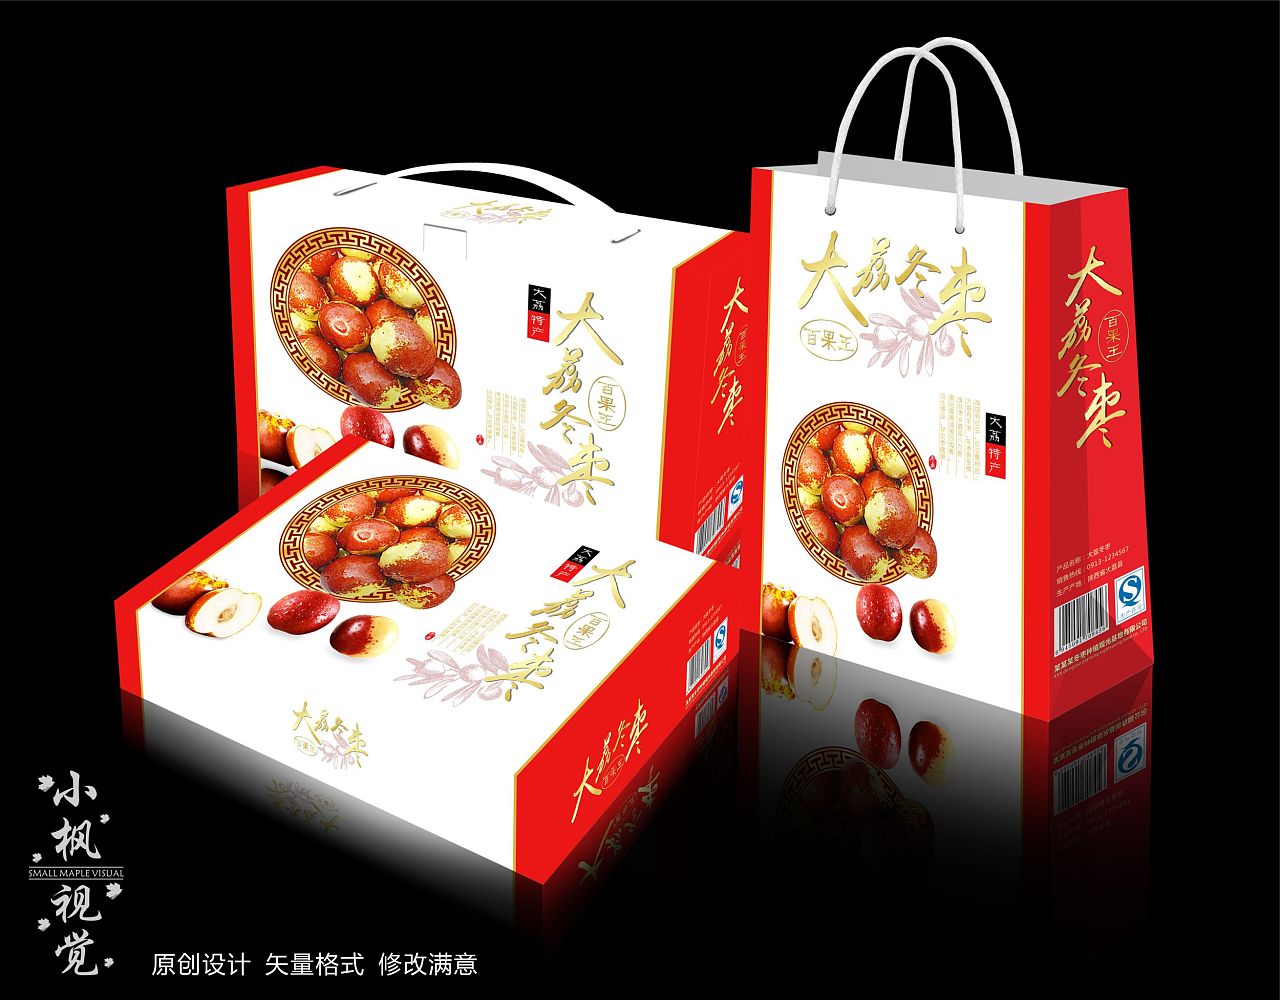 系列水果礼盒包装设计案例赏析 - 艺点创意商城